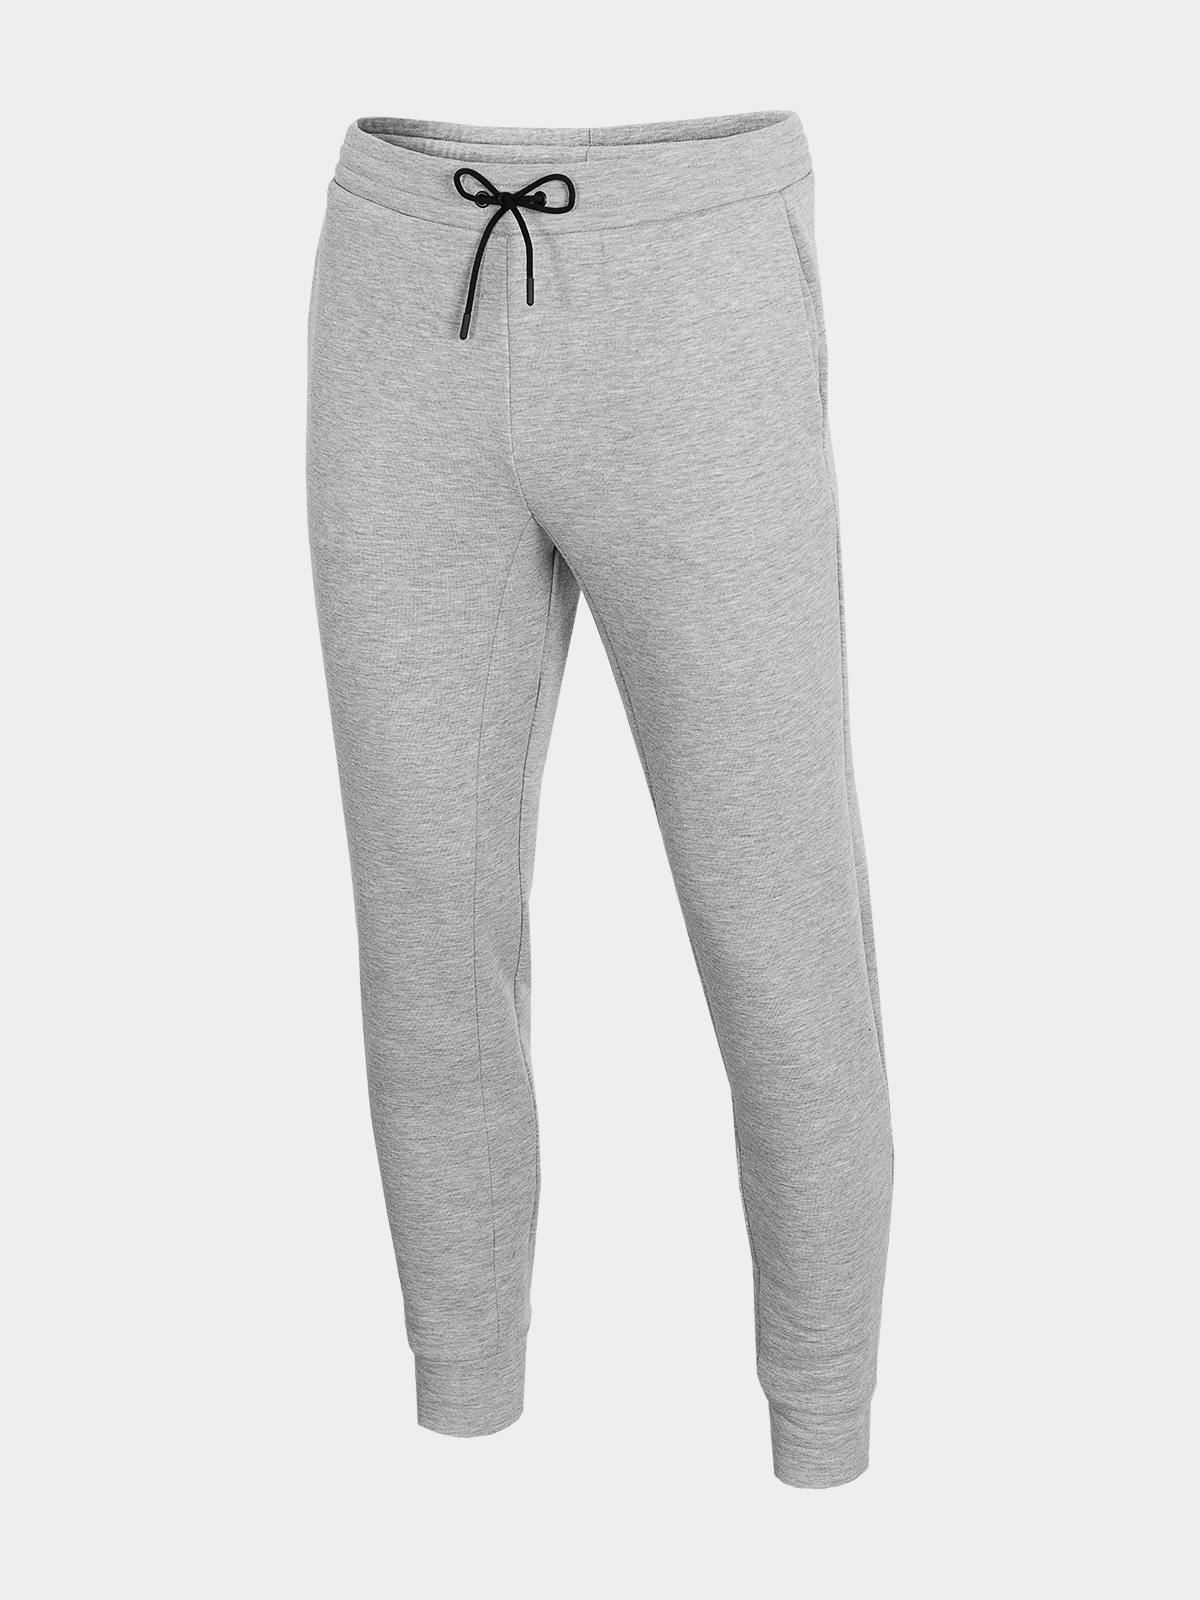 фото Спортивные брюки мужские outhorn hol21-spmd604-26m серые m